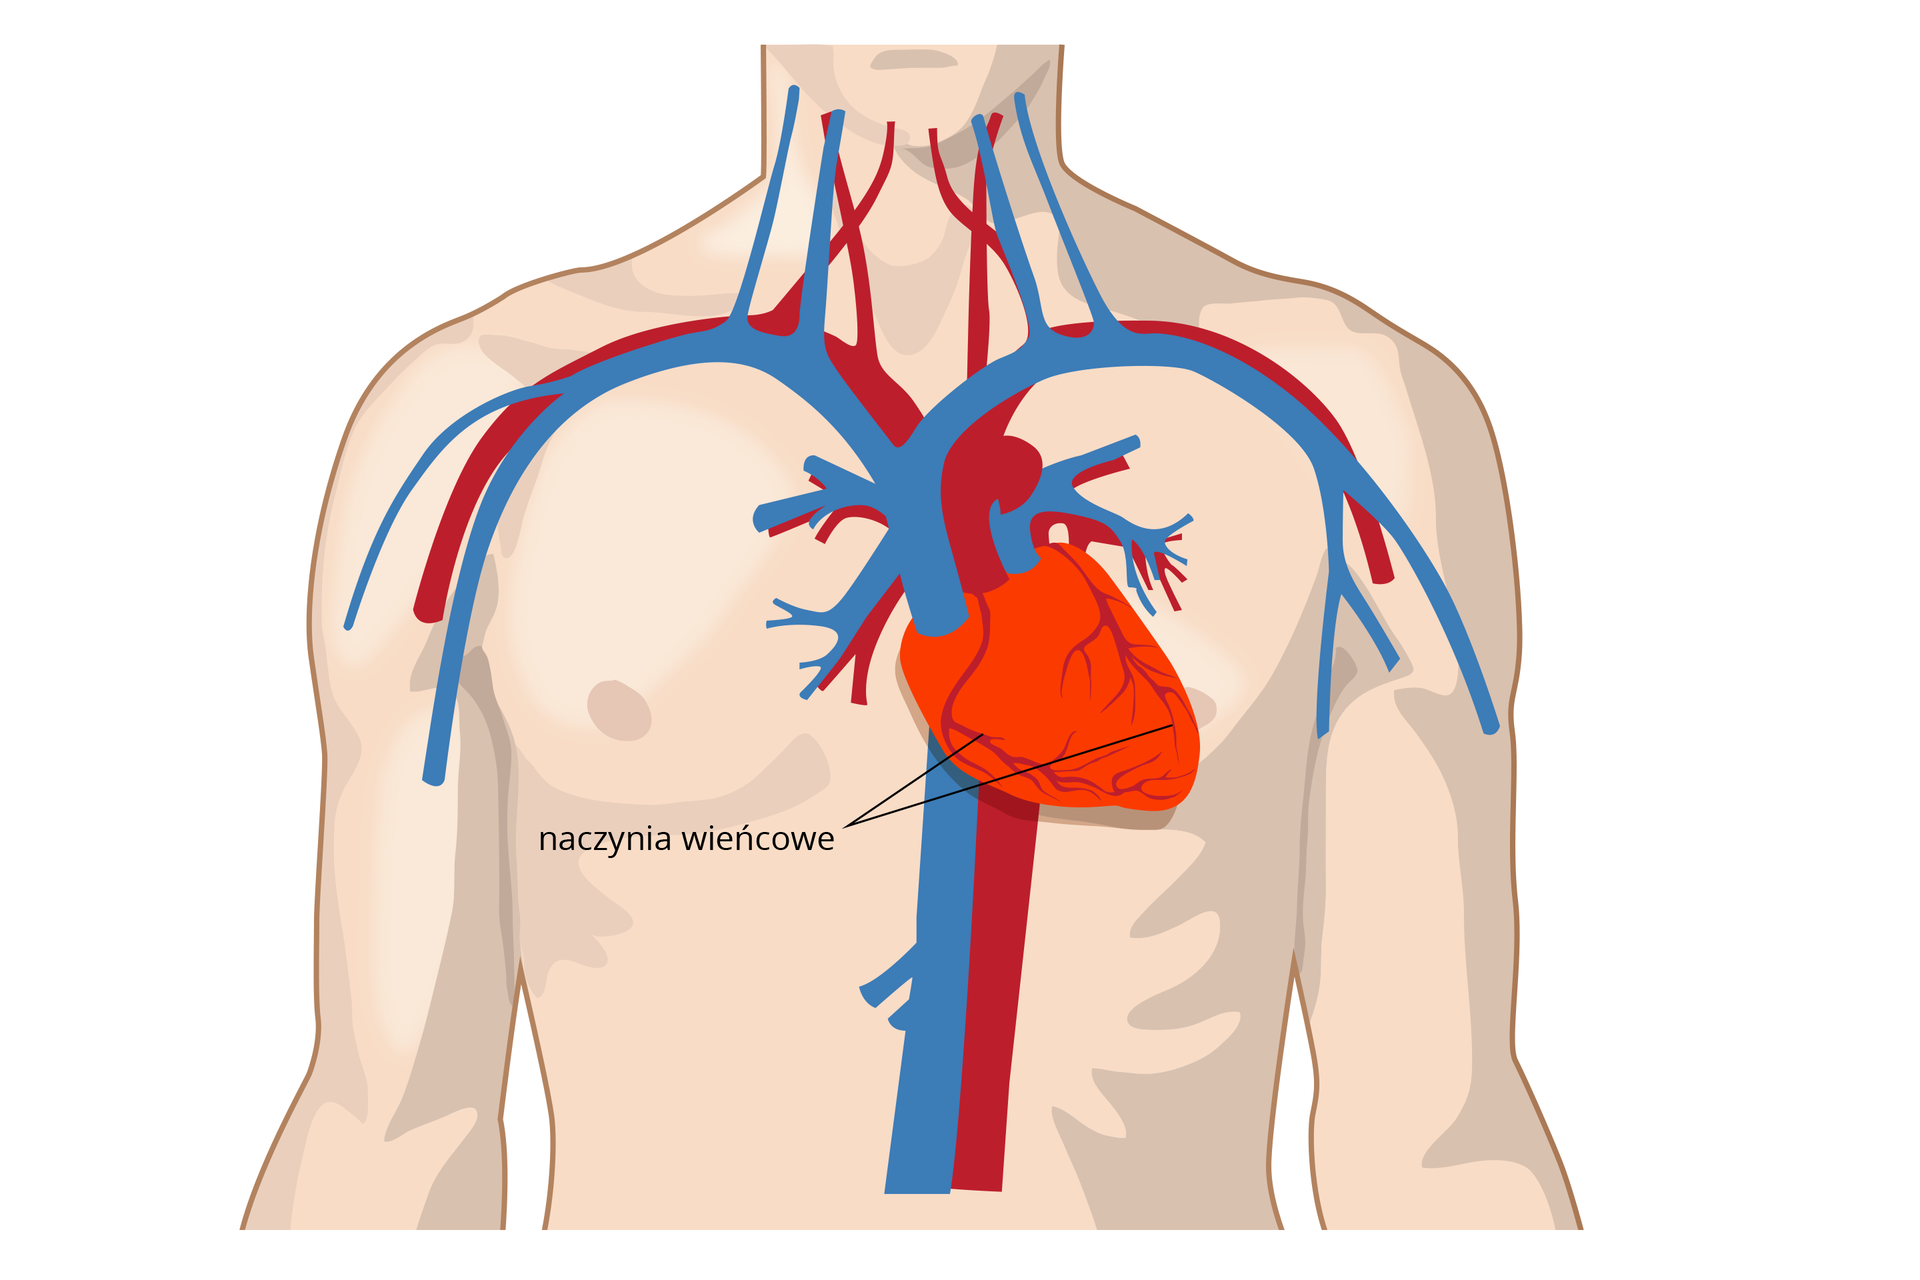 Ilustracja przedstawia różową sylwetkę torsu człowieka. Wrysowano w nim na środku klatki piersiowej jaskrawo czerwone serce. Koniuszek serca skierowany w bok. Na sercu szare rozgałęzienia, czyli naczynia wieńcowe. U góry i za sercem grube naczynia krwionośne: niebieskie żyły, czerwone tętnice.